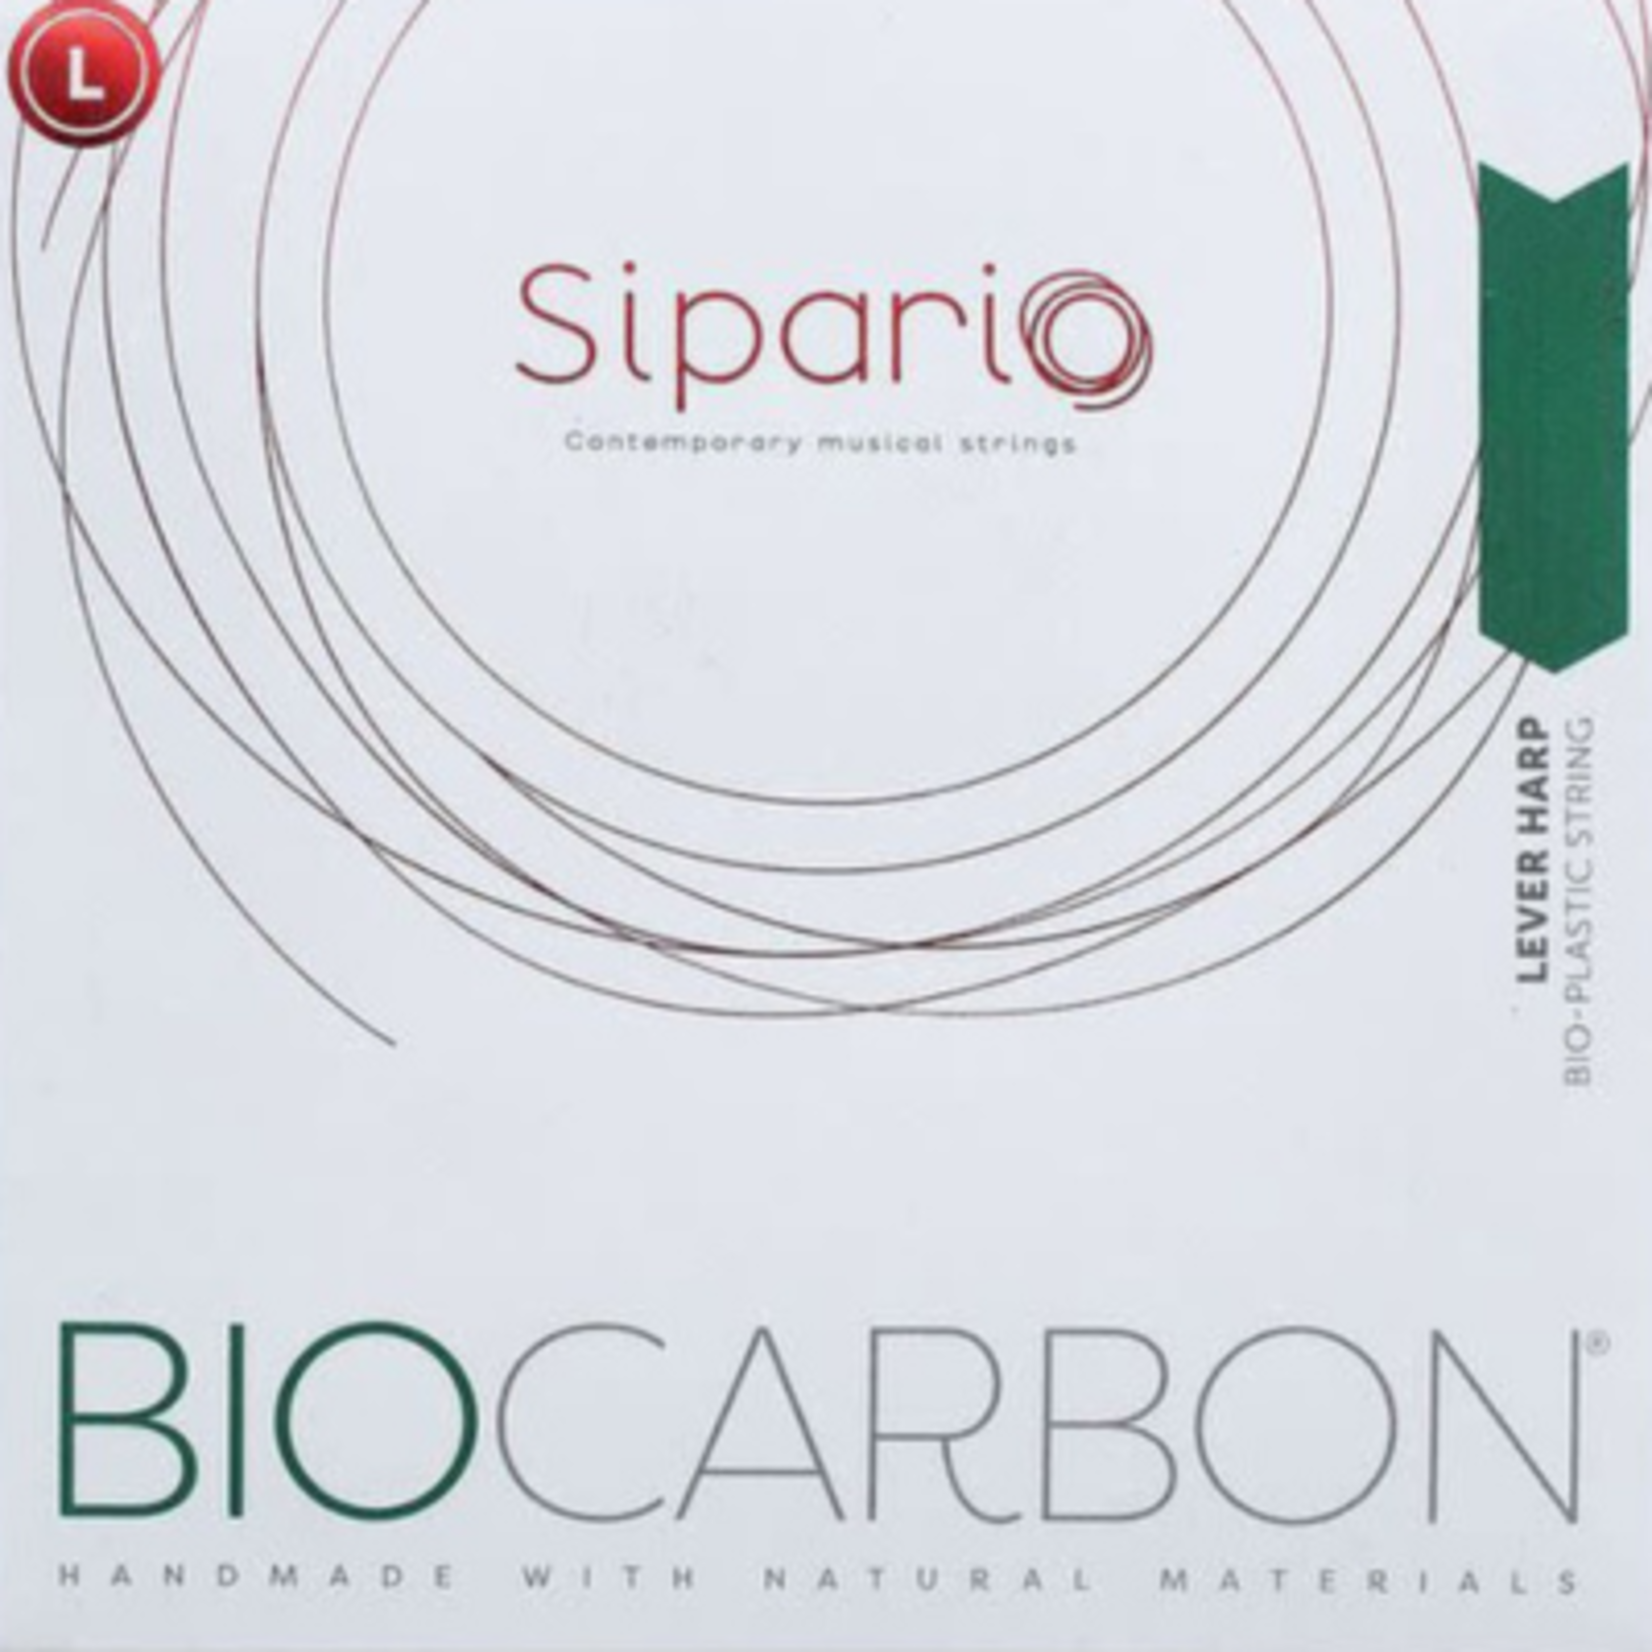 SIPARIO klep biocarbon (set) - 2de octaaf - inclusief 5% korting